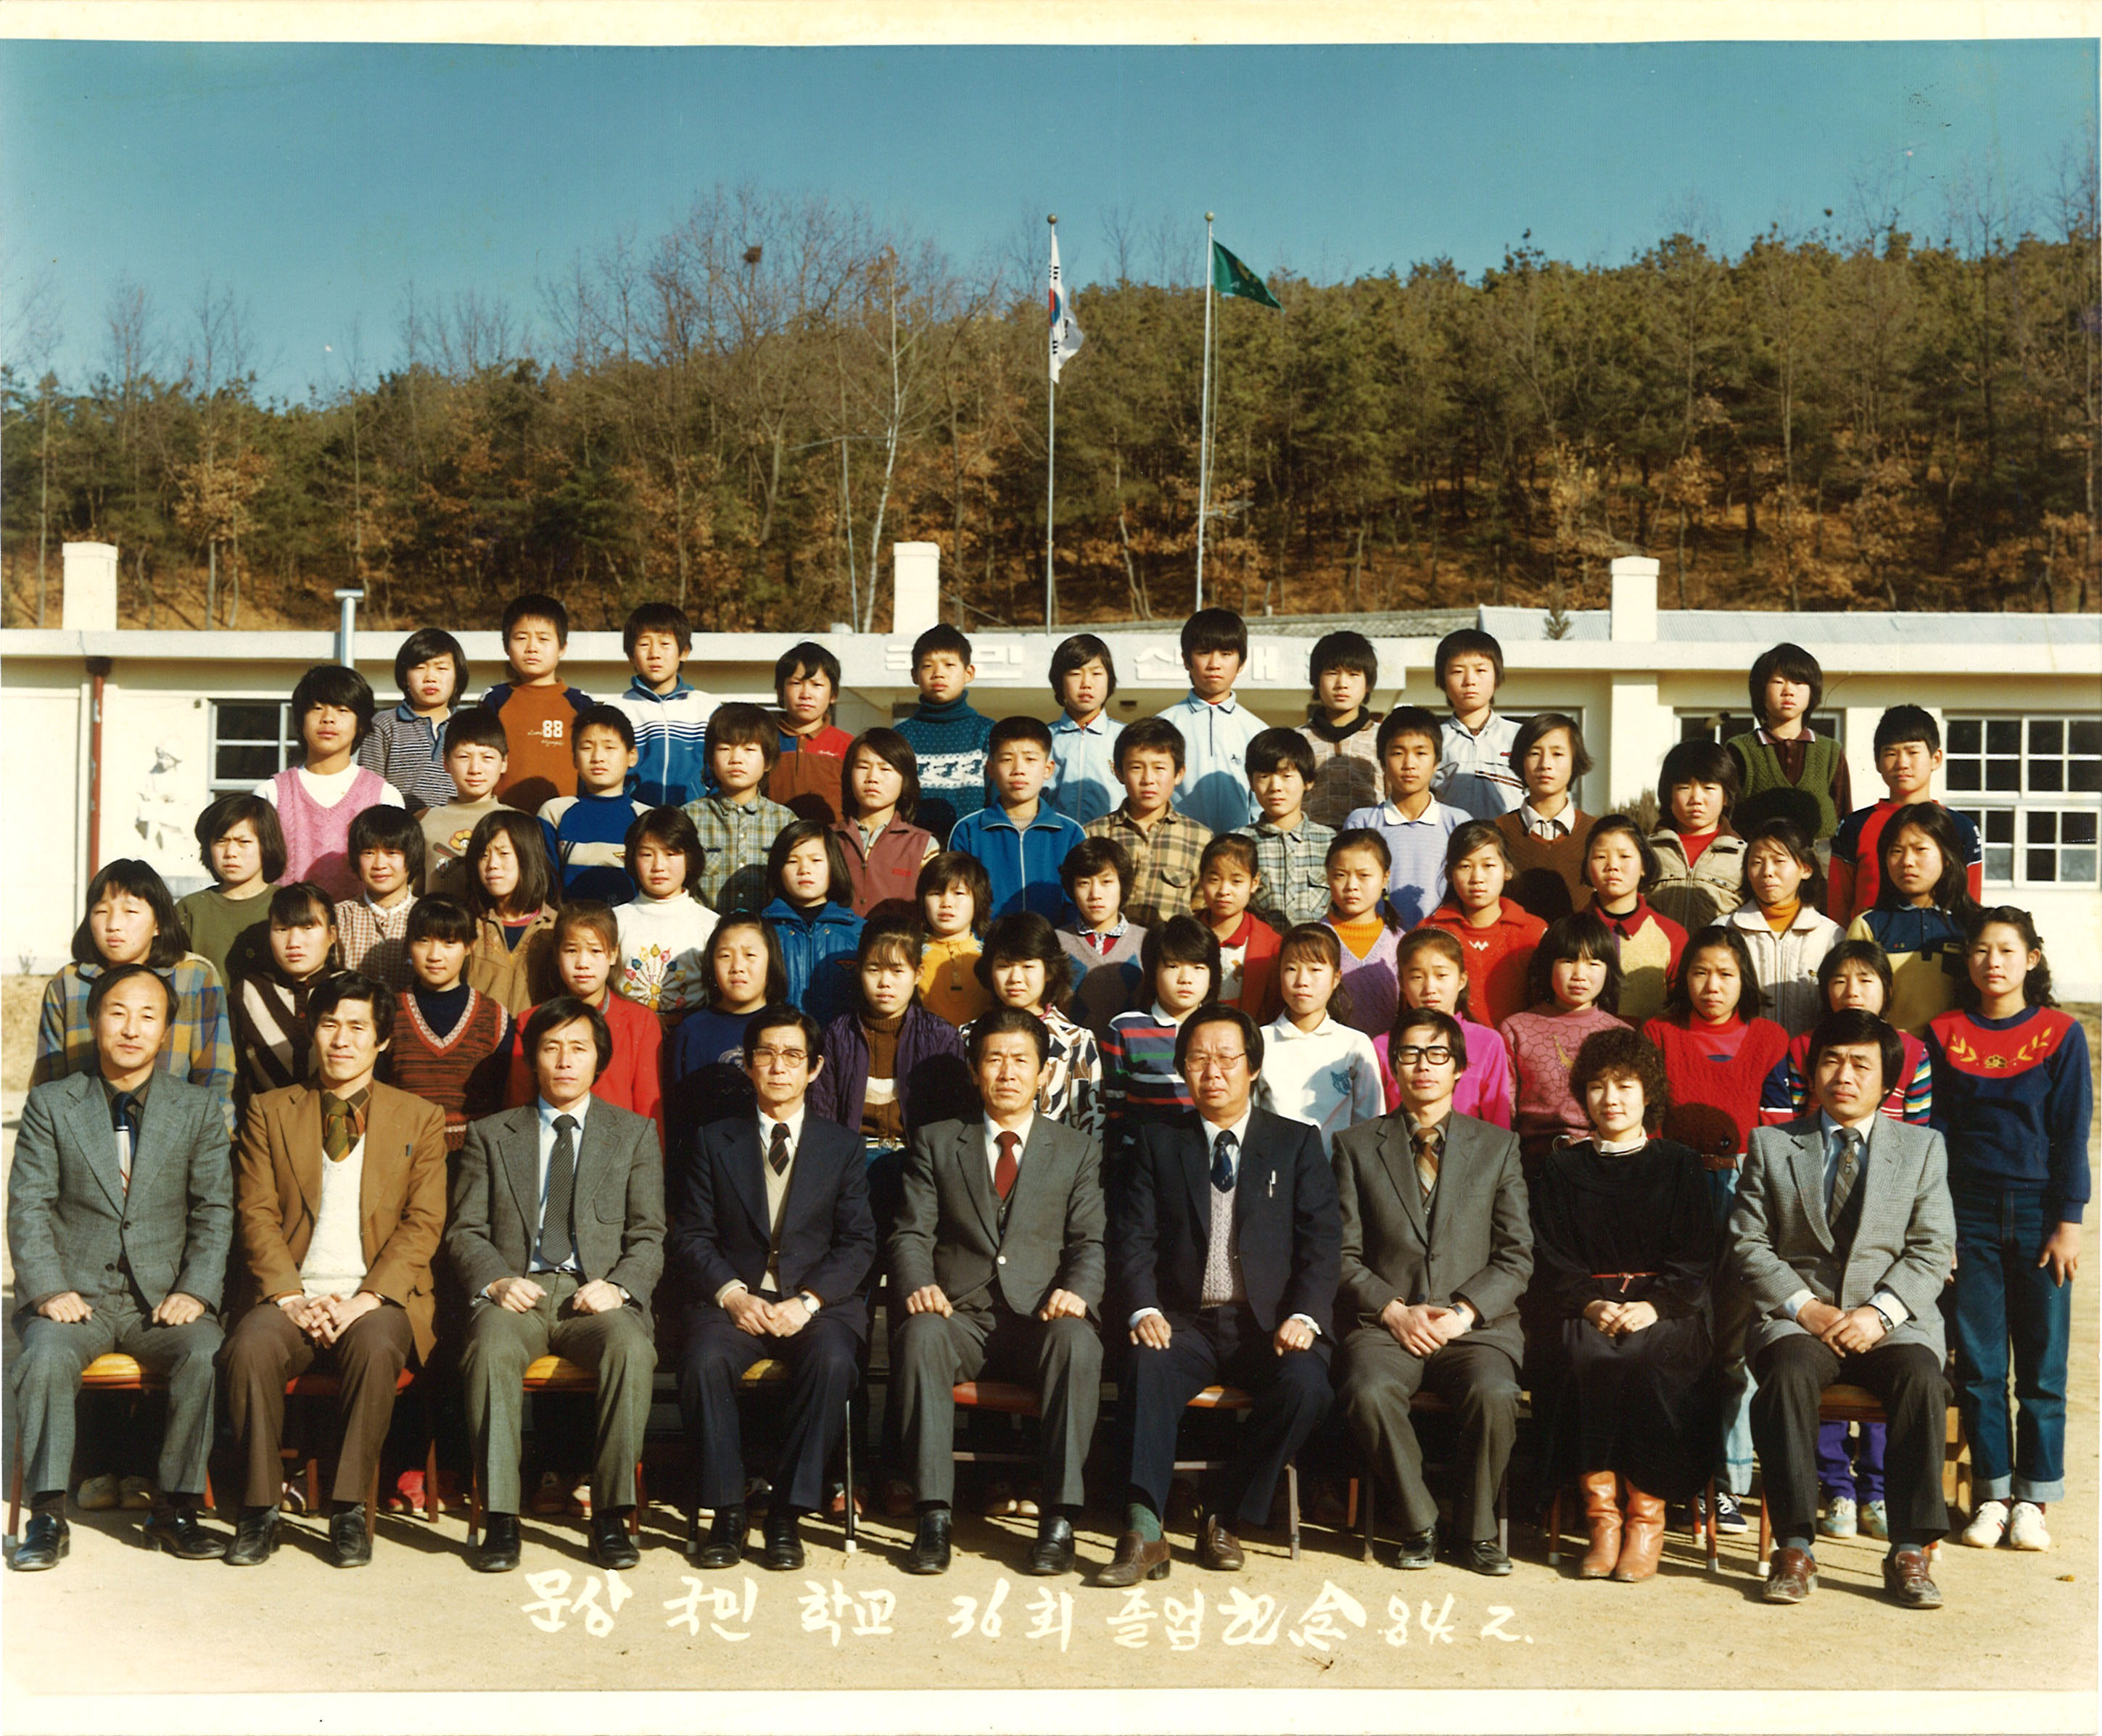 1984년(1983학년도) 제36회 졸업사진.jpg